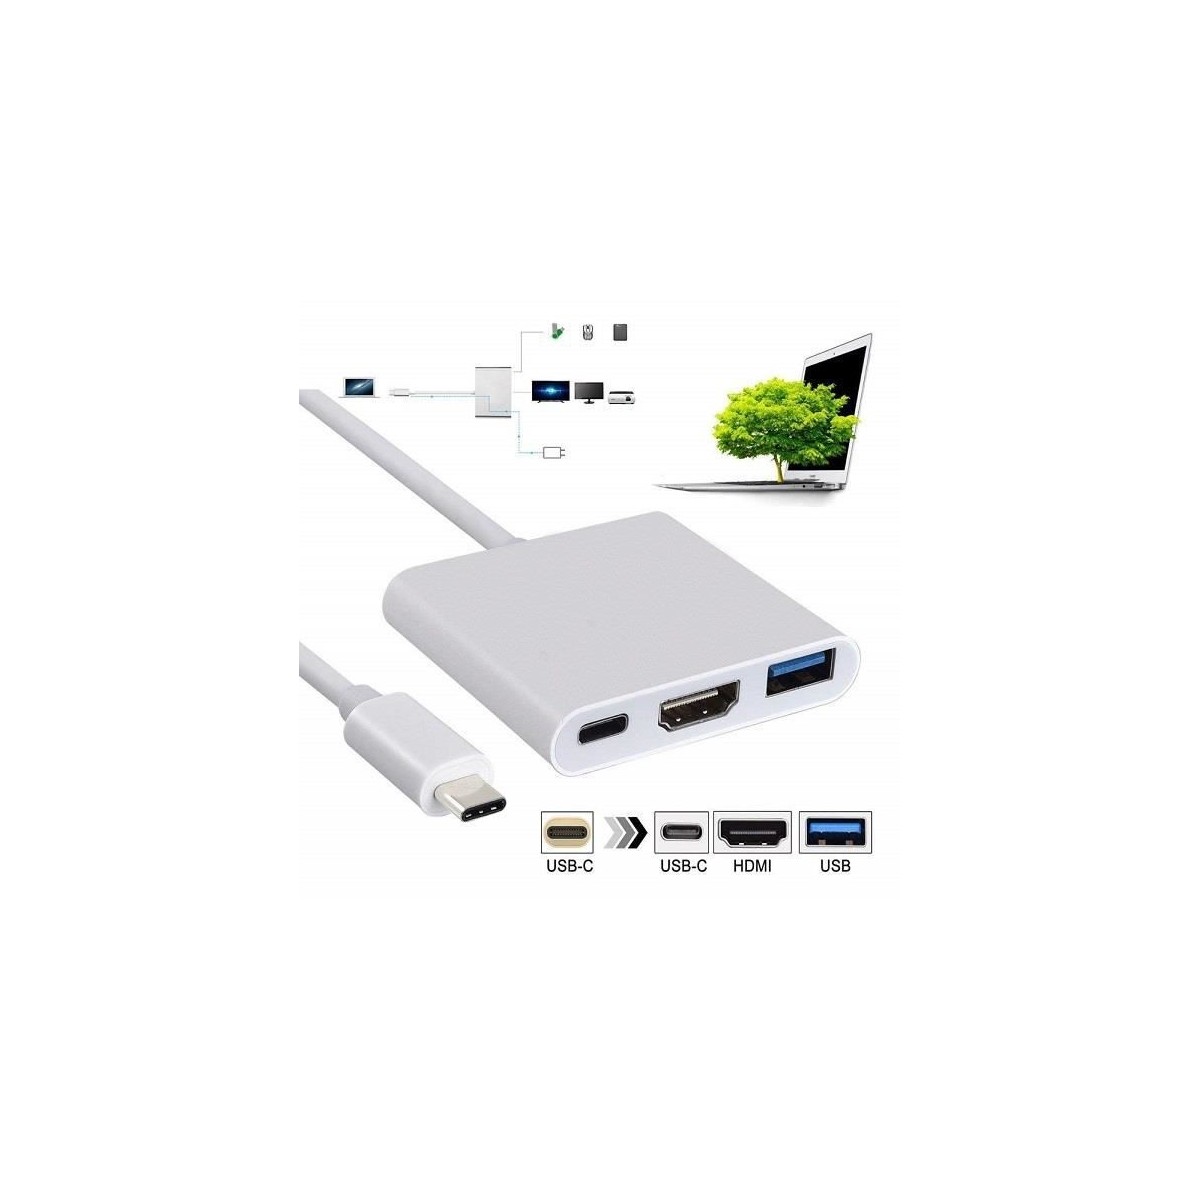 Adaptateur USB C vers HDMI 4K, Adaptateur Type C Hub vers HDMI Convertisseur avec Port USB 3.0 et Port de Charge C USB Compatibl